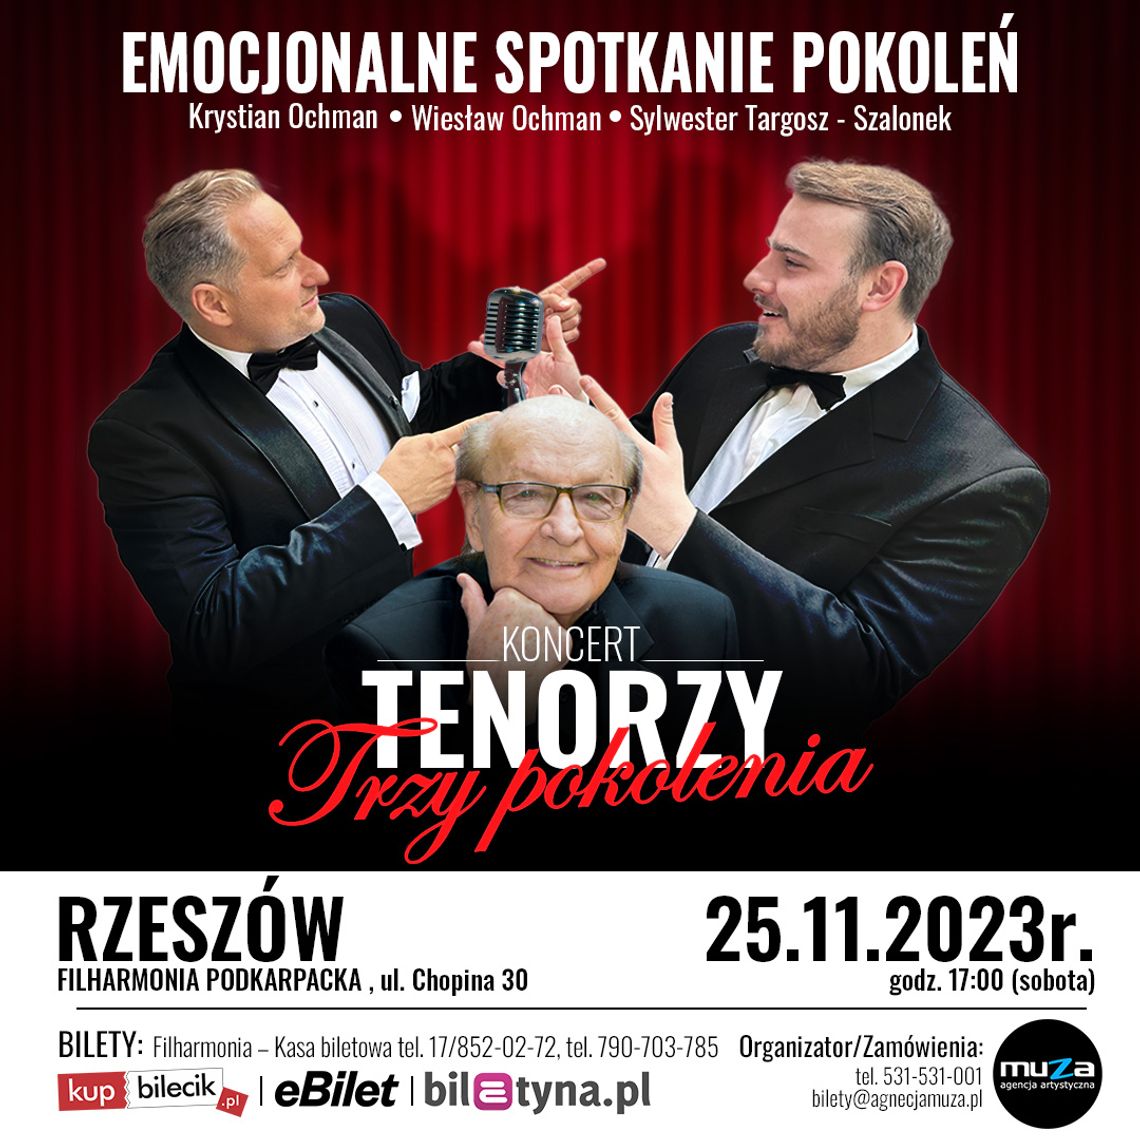 Koncert z orkiestrą „Tenorzy – trzy pokolenia” w Filharmonii Podkarpackiej w Rzeszowie